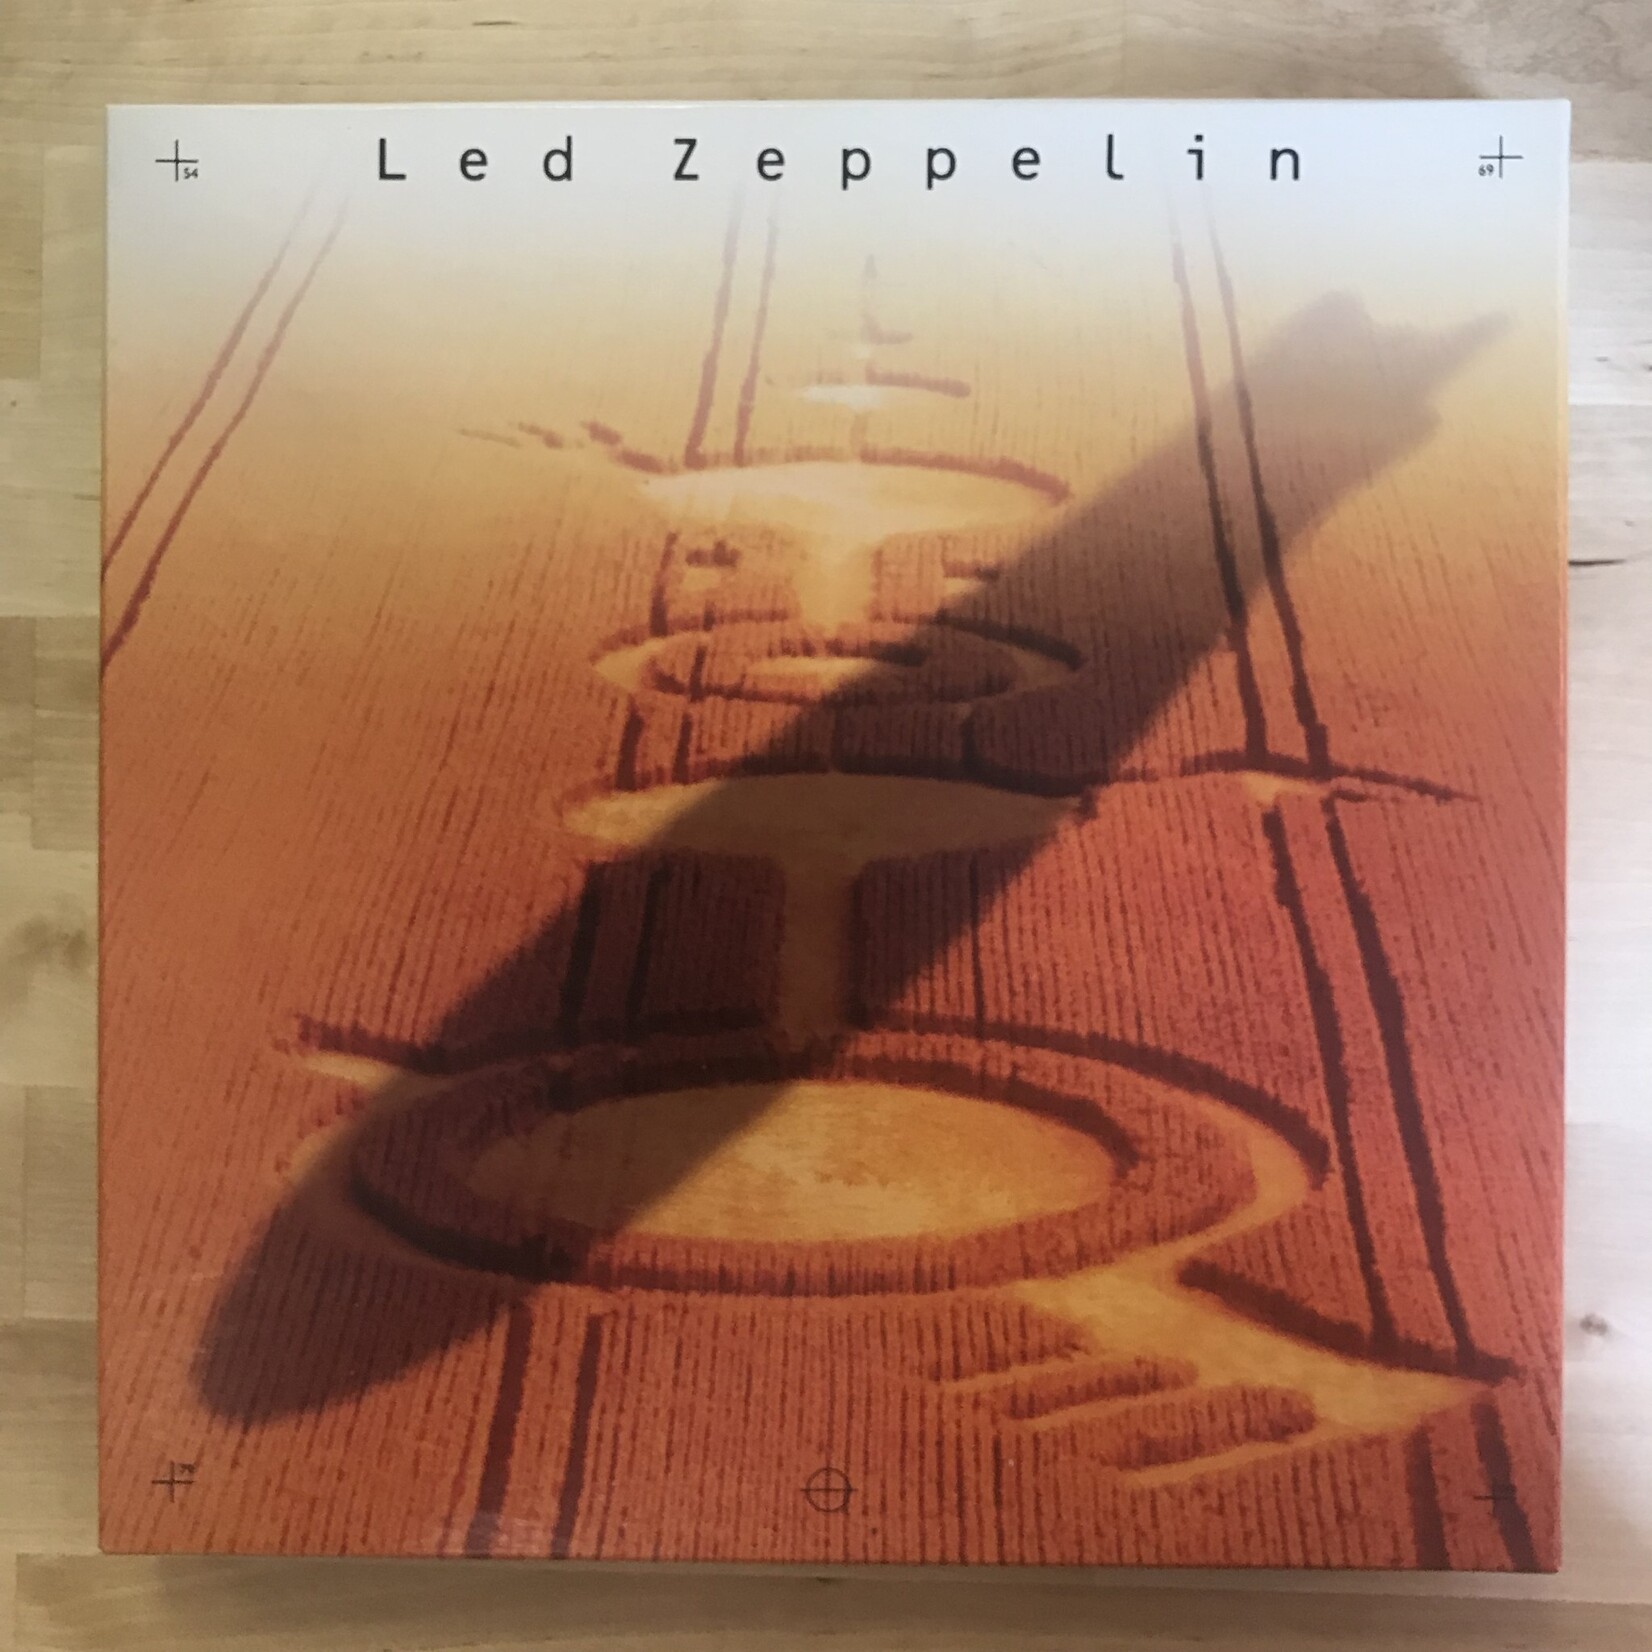 Led Zeppelin - Led Zeppelin - 7 82144 2 - CD Box Set (USED)